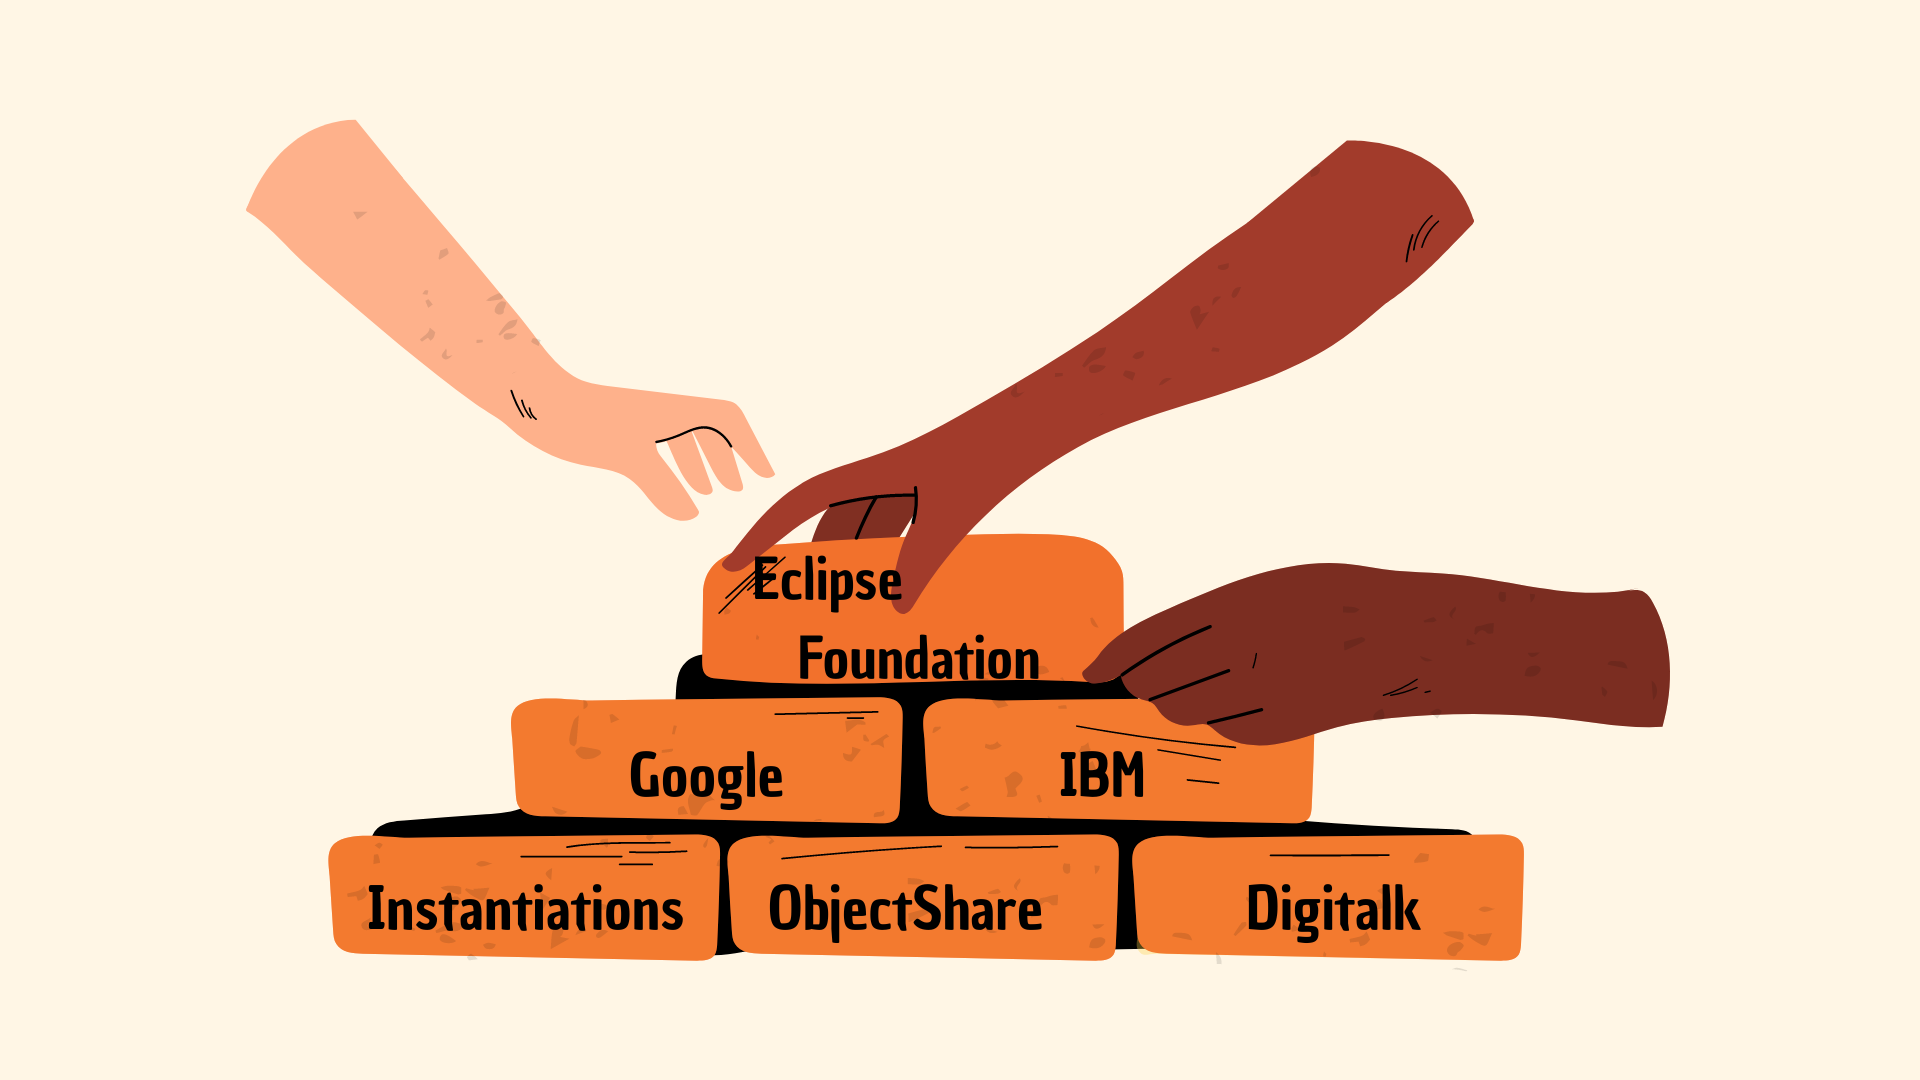 Mãos montando uma parede de tijolos, e em cada tilojo algo escrito, sendo: "Eclipse Foundation"; "Google"; "IBM"; "Instantiations"; "ObjectShare"; "Digitalk".